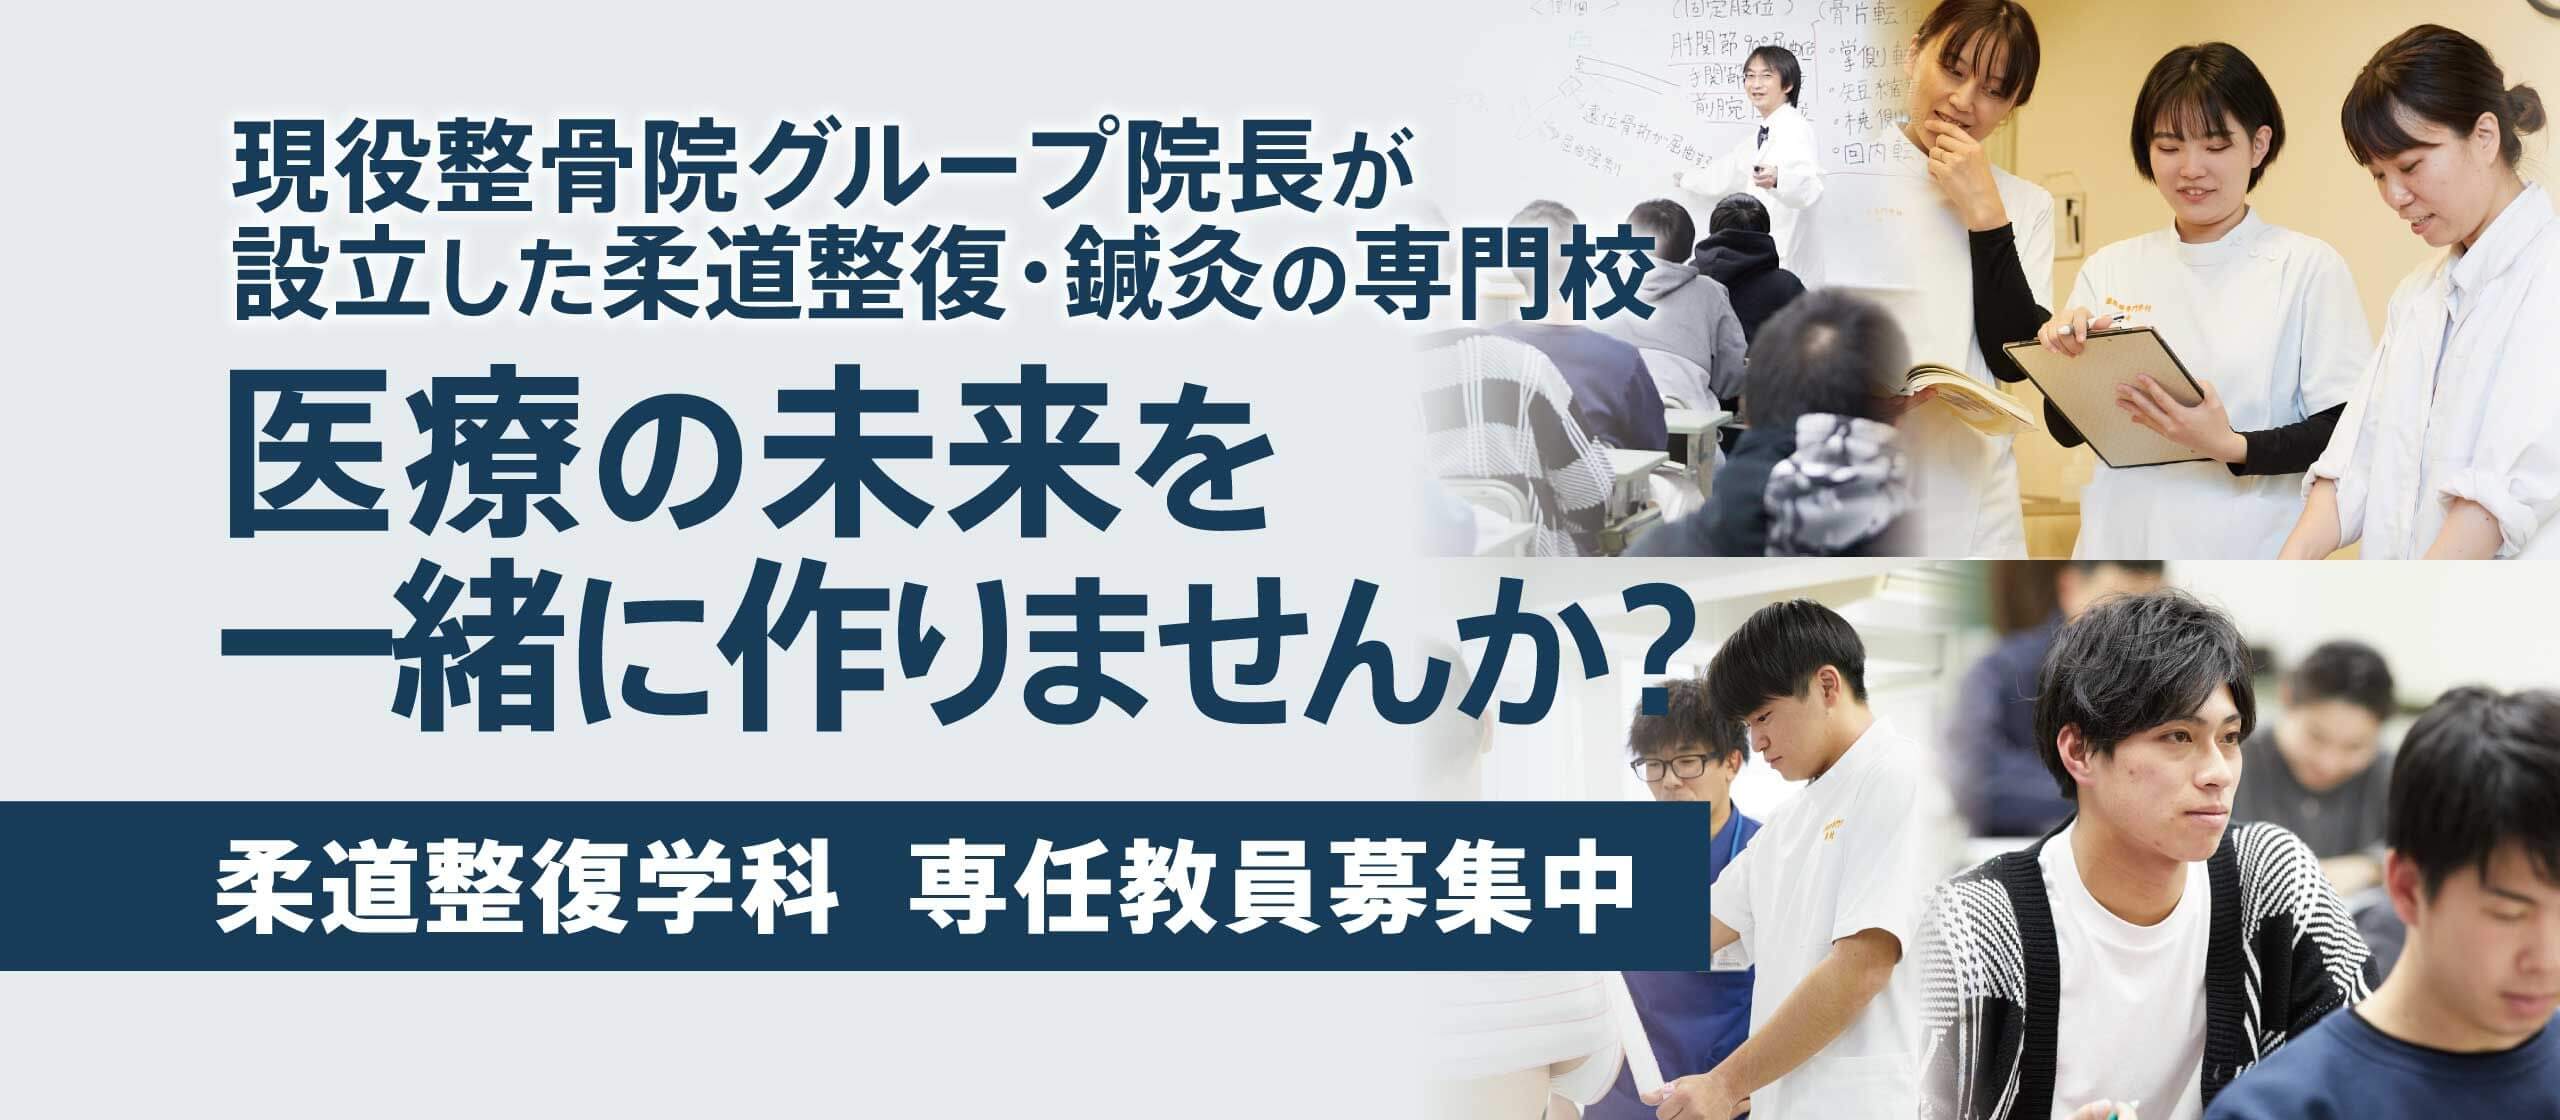 近畿医療専門学校では柔道整復学科・鍼灸学科の専任教員を募集しています。